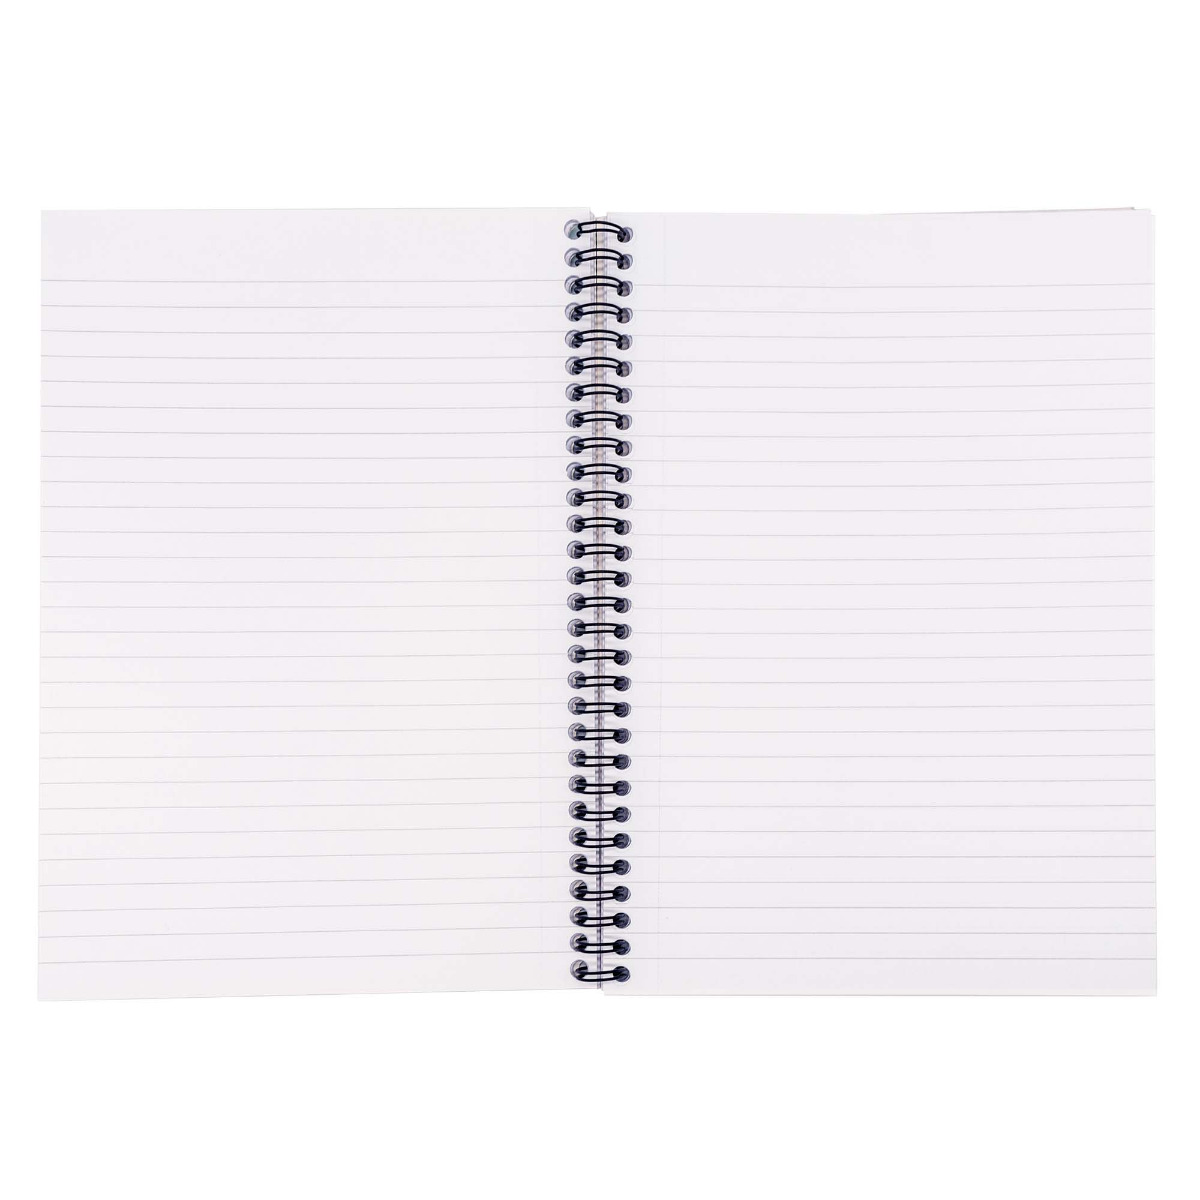 A4 Metallic Jotta Notepad Pack of 3 - Pukka Pads